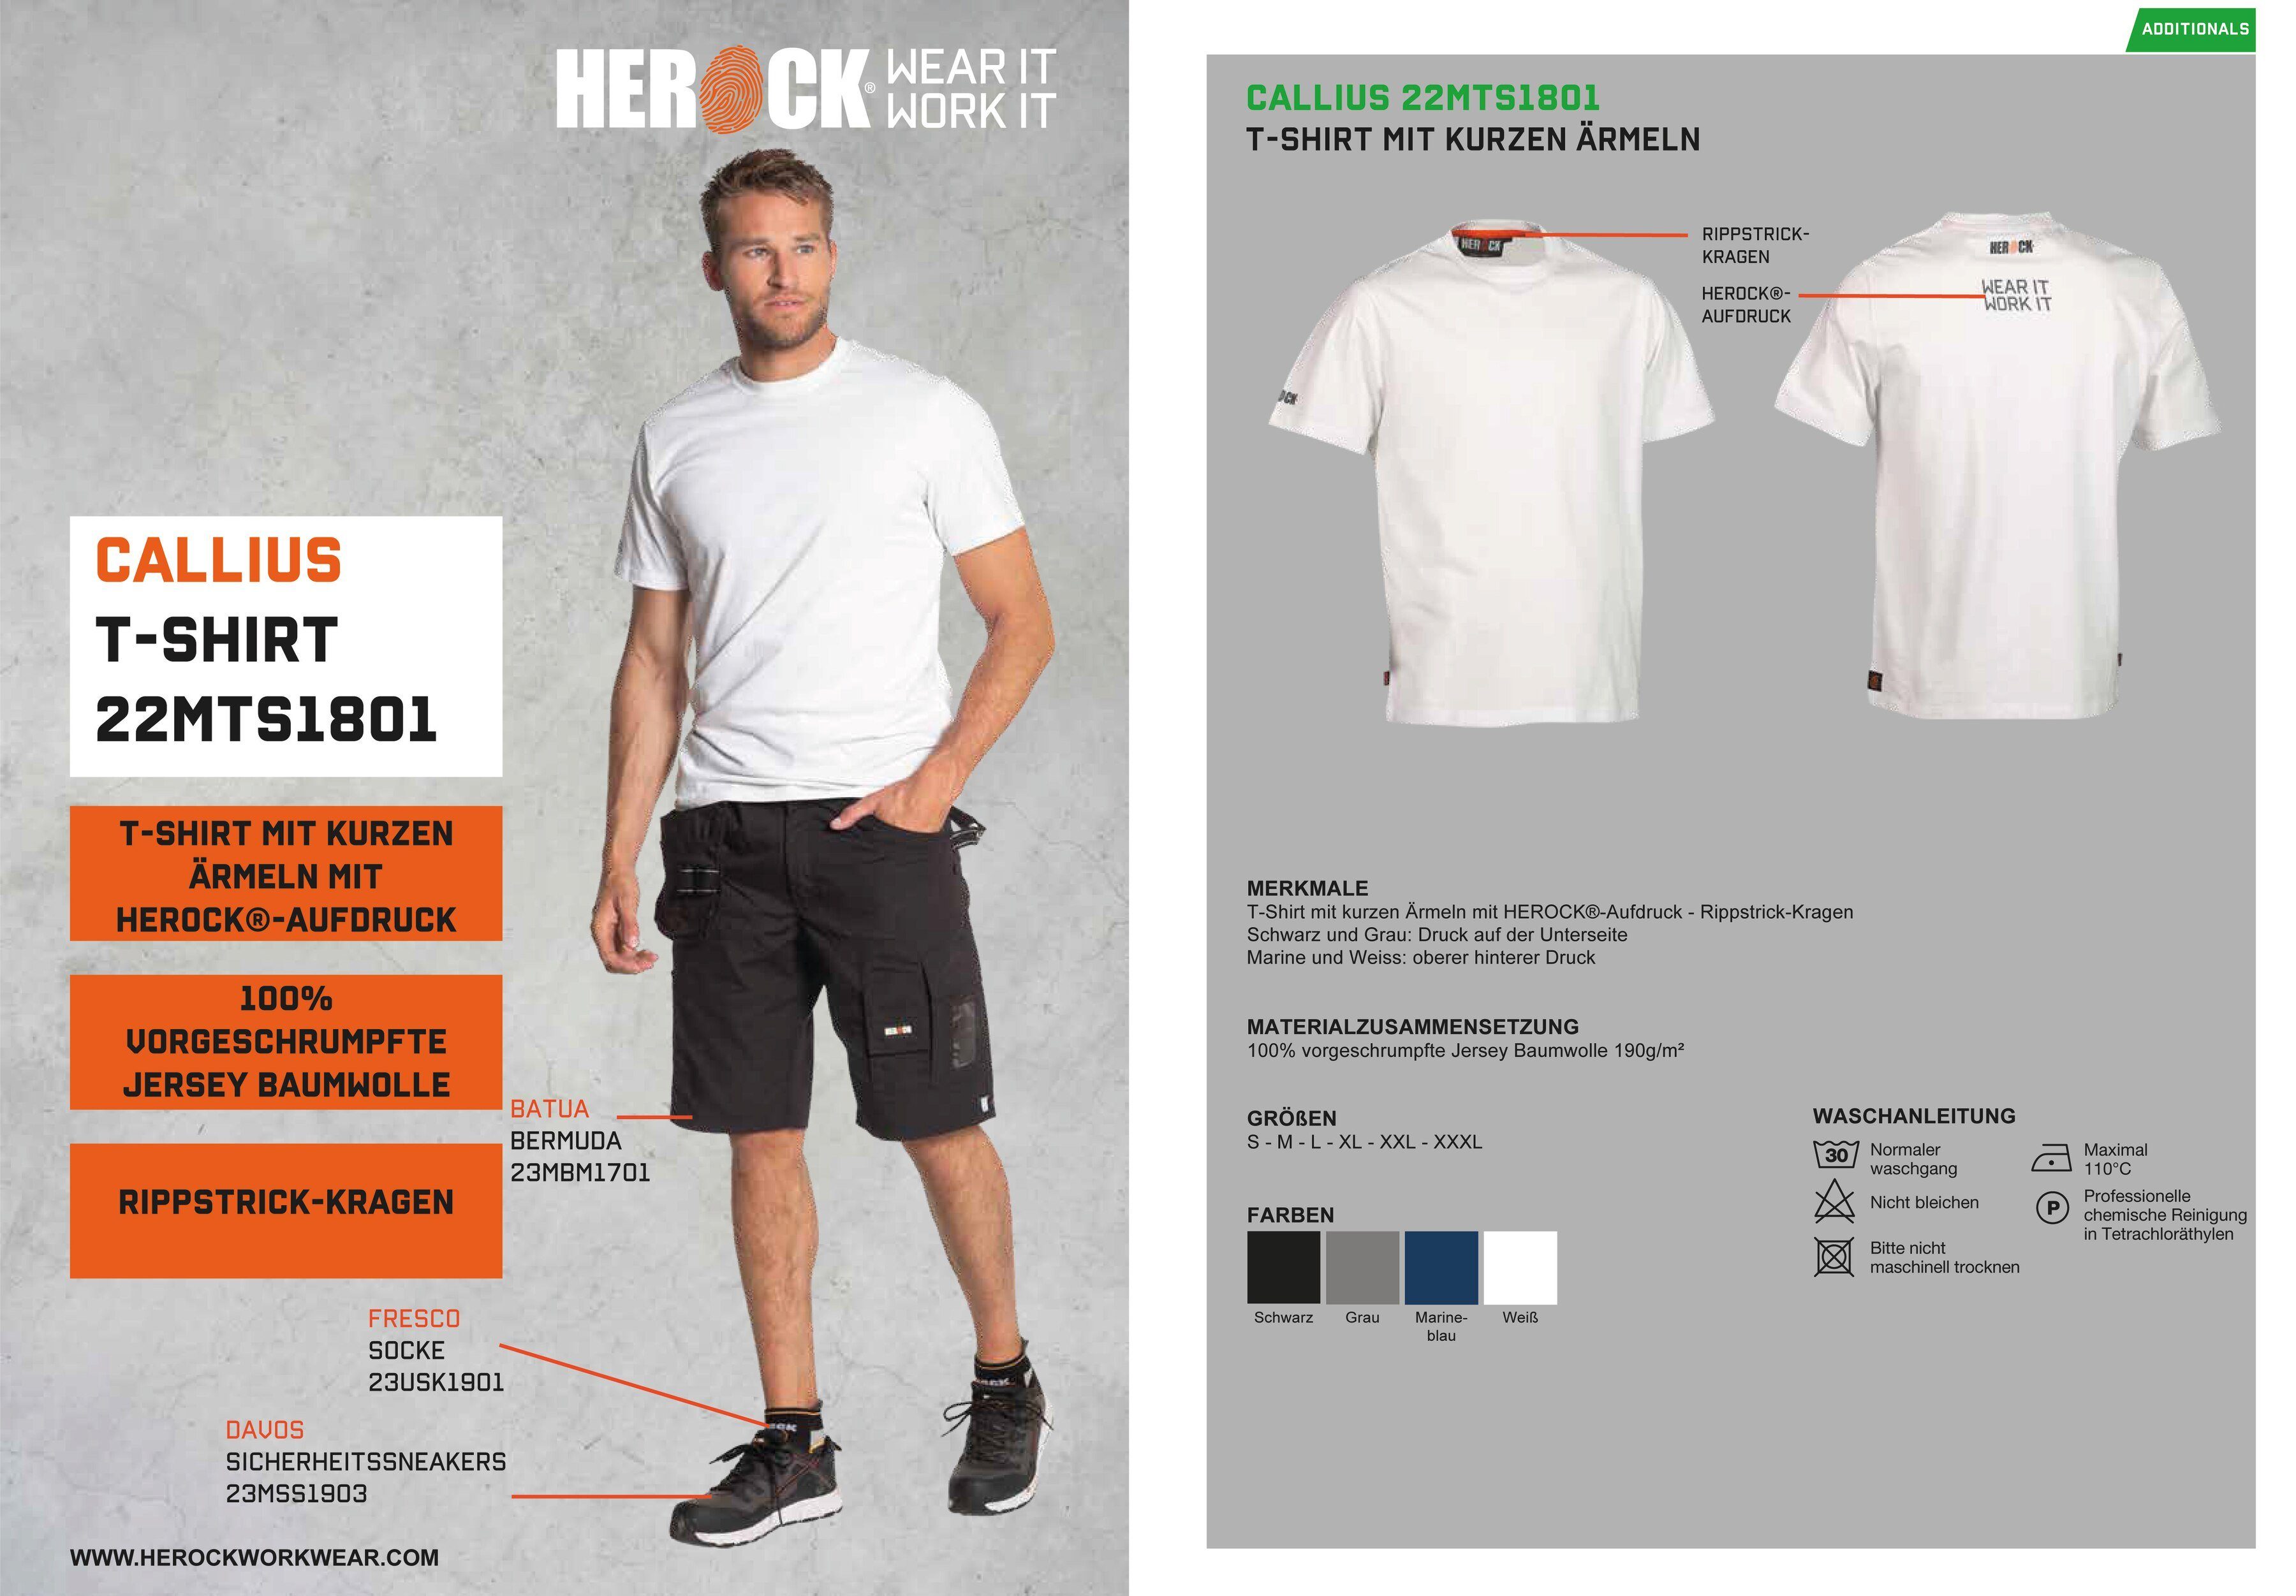 Herock T-Shirt Callius T-Shirt Rundhalsausschnitt, Rippstrickkragen Ärmel, Ärmel kurze Herock®-Aufdruck, weiß kurze